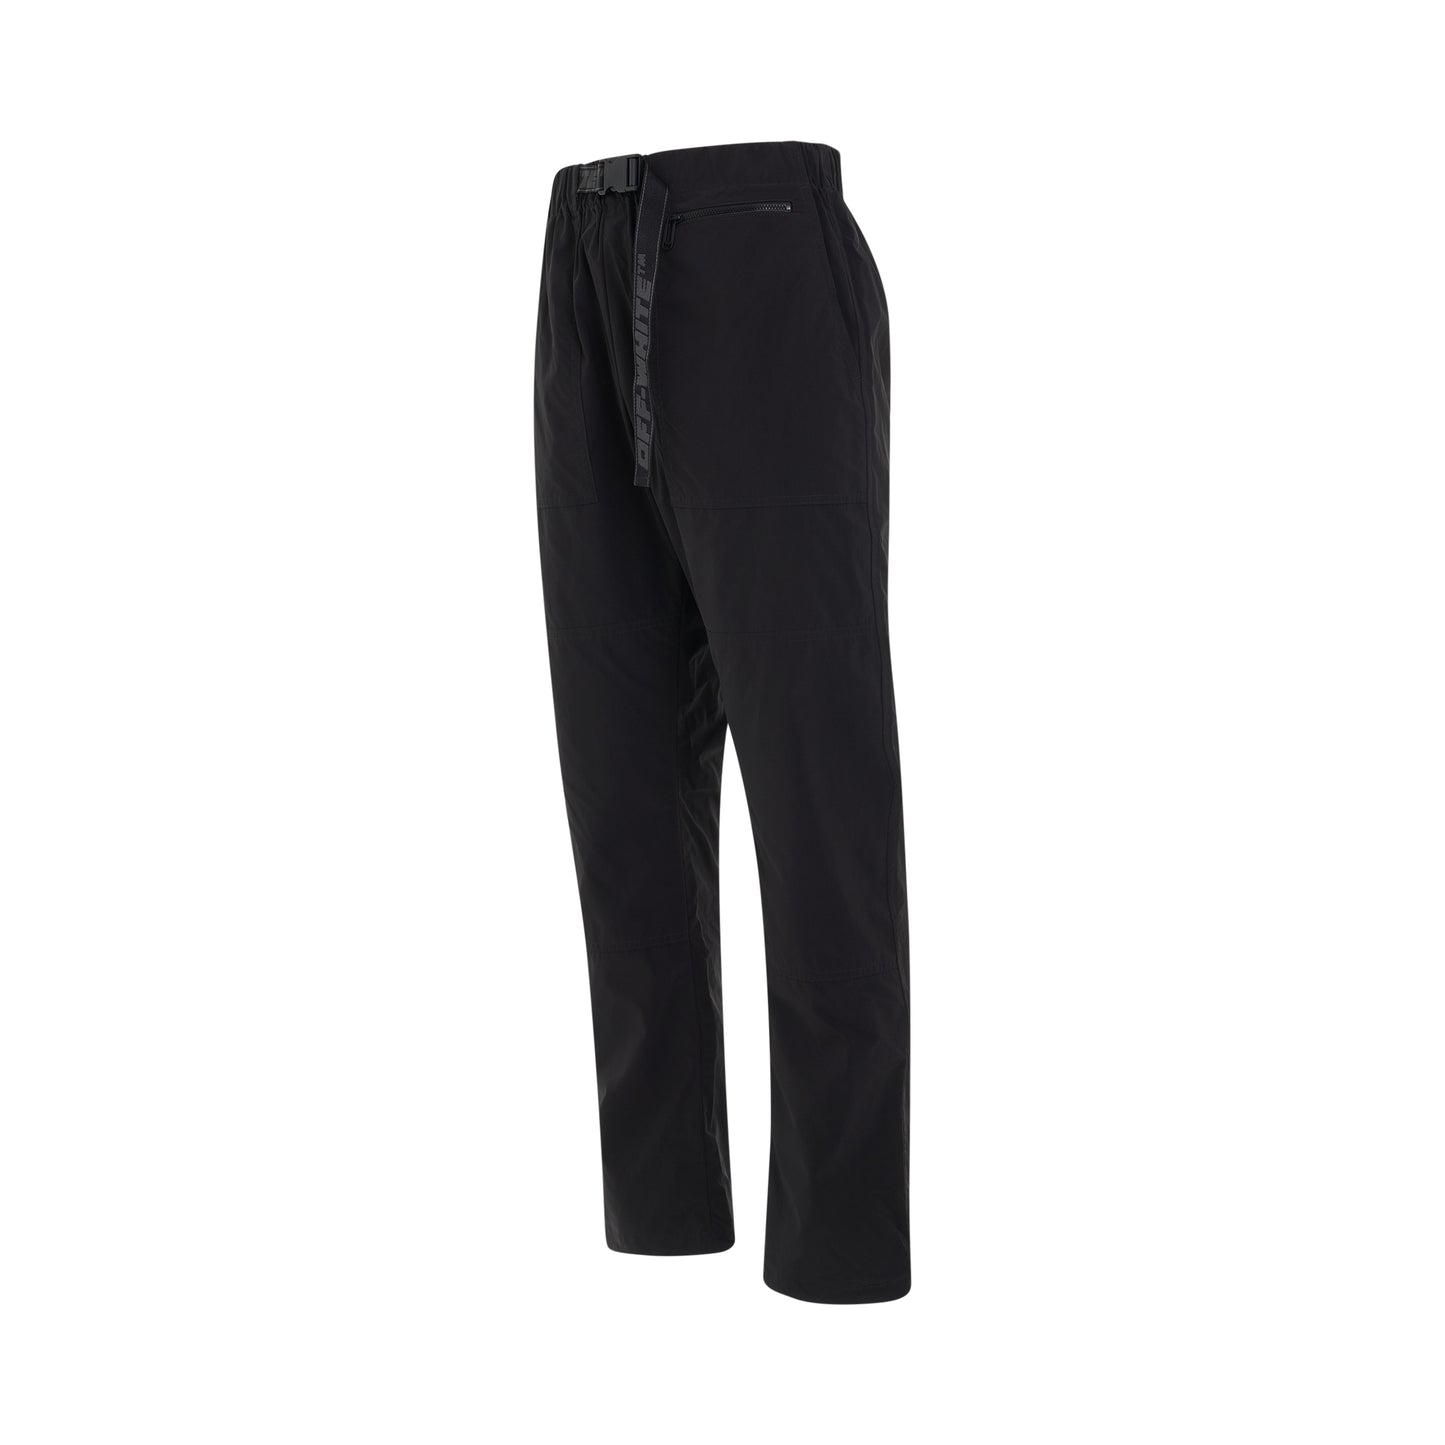 Industrial Casual Pants in Black/Dark Grey